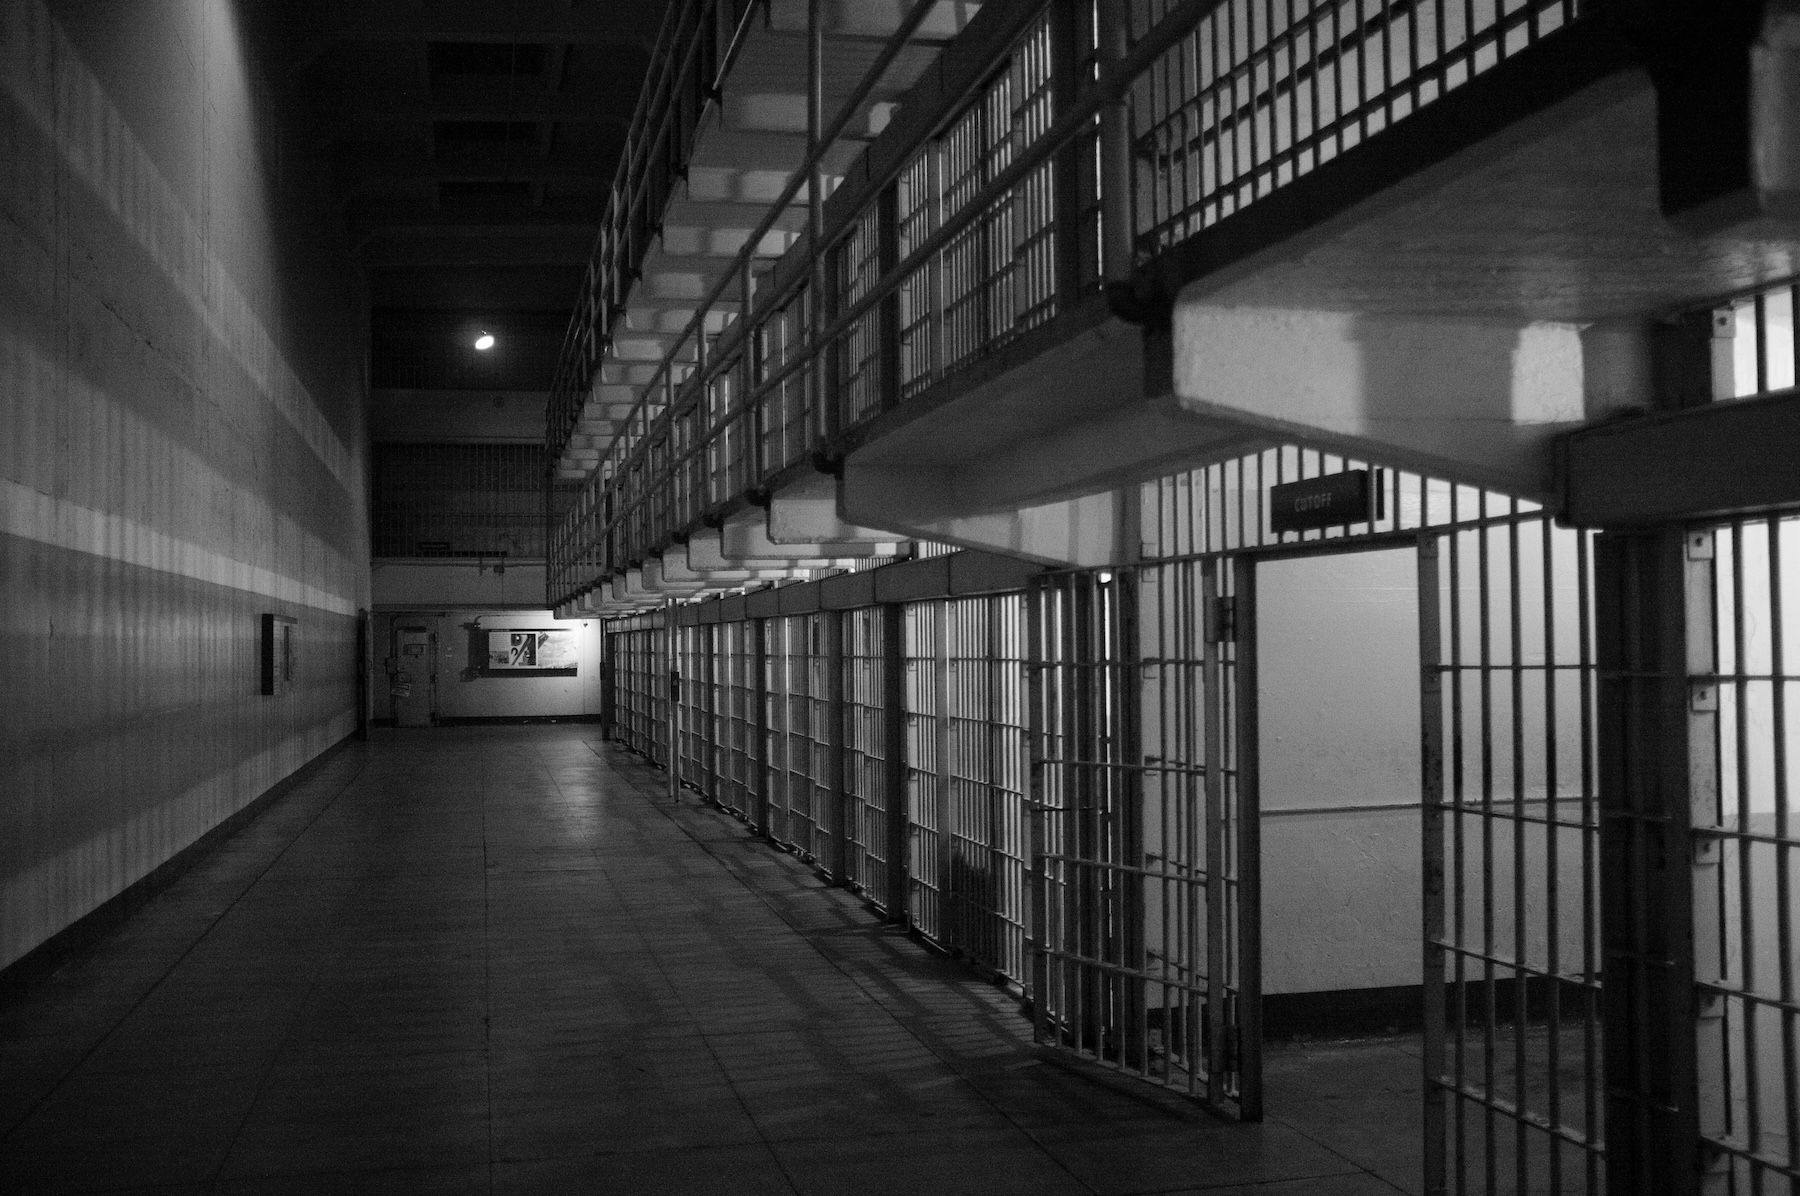 Correctional facility cells